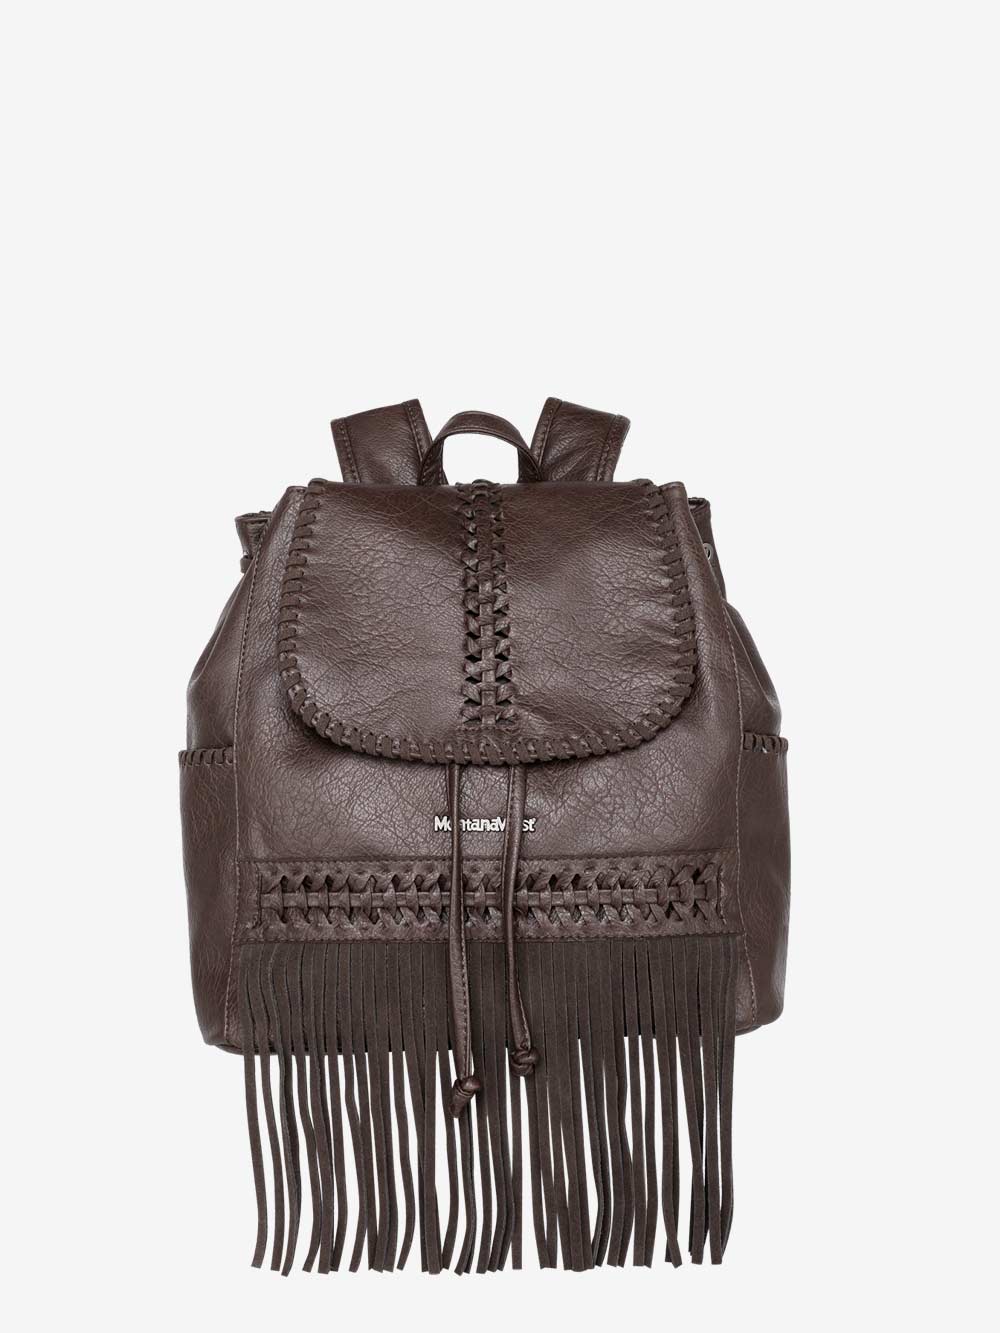 Western TASSEL LEATHER BACKPACK Tan, Boho Fringe Leather Bag